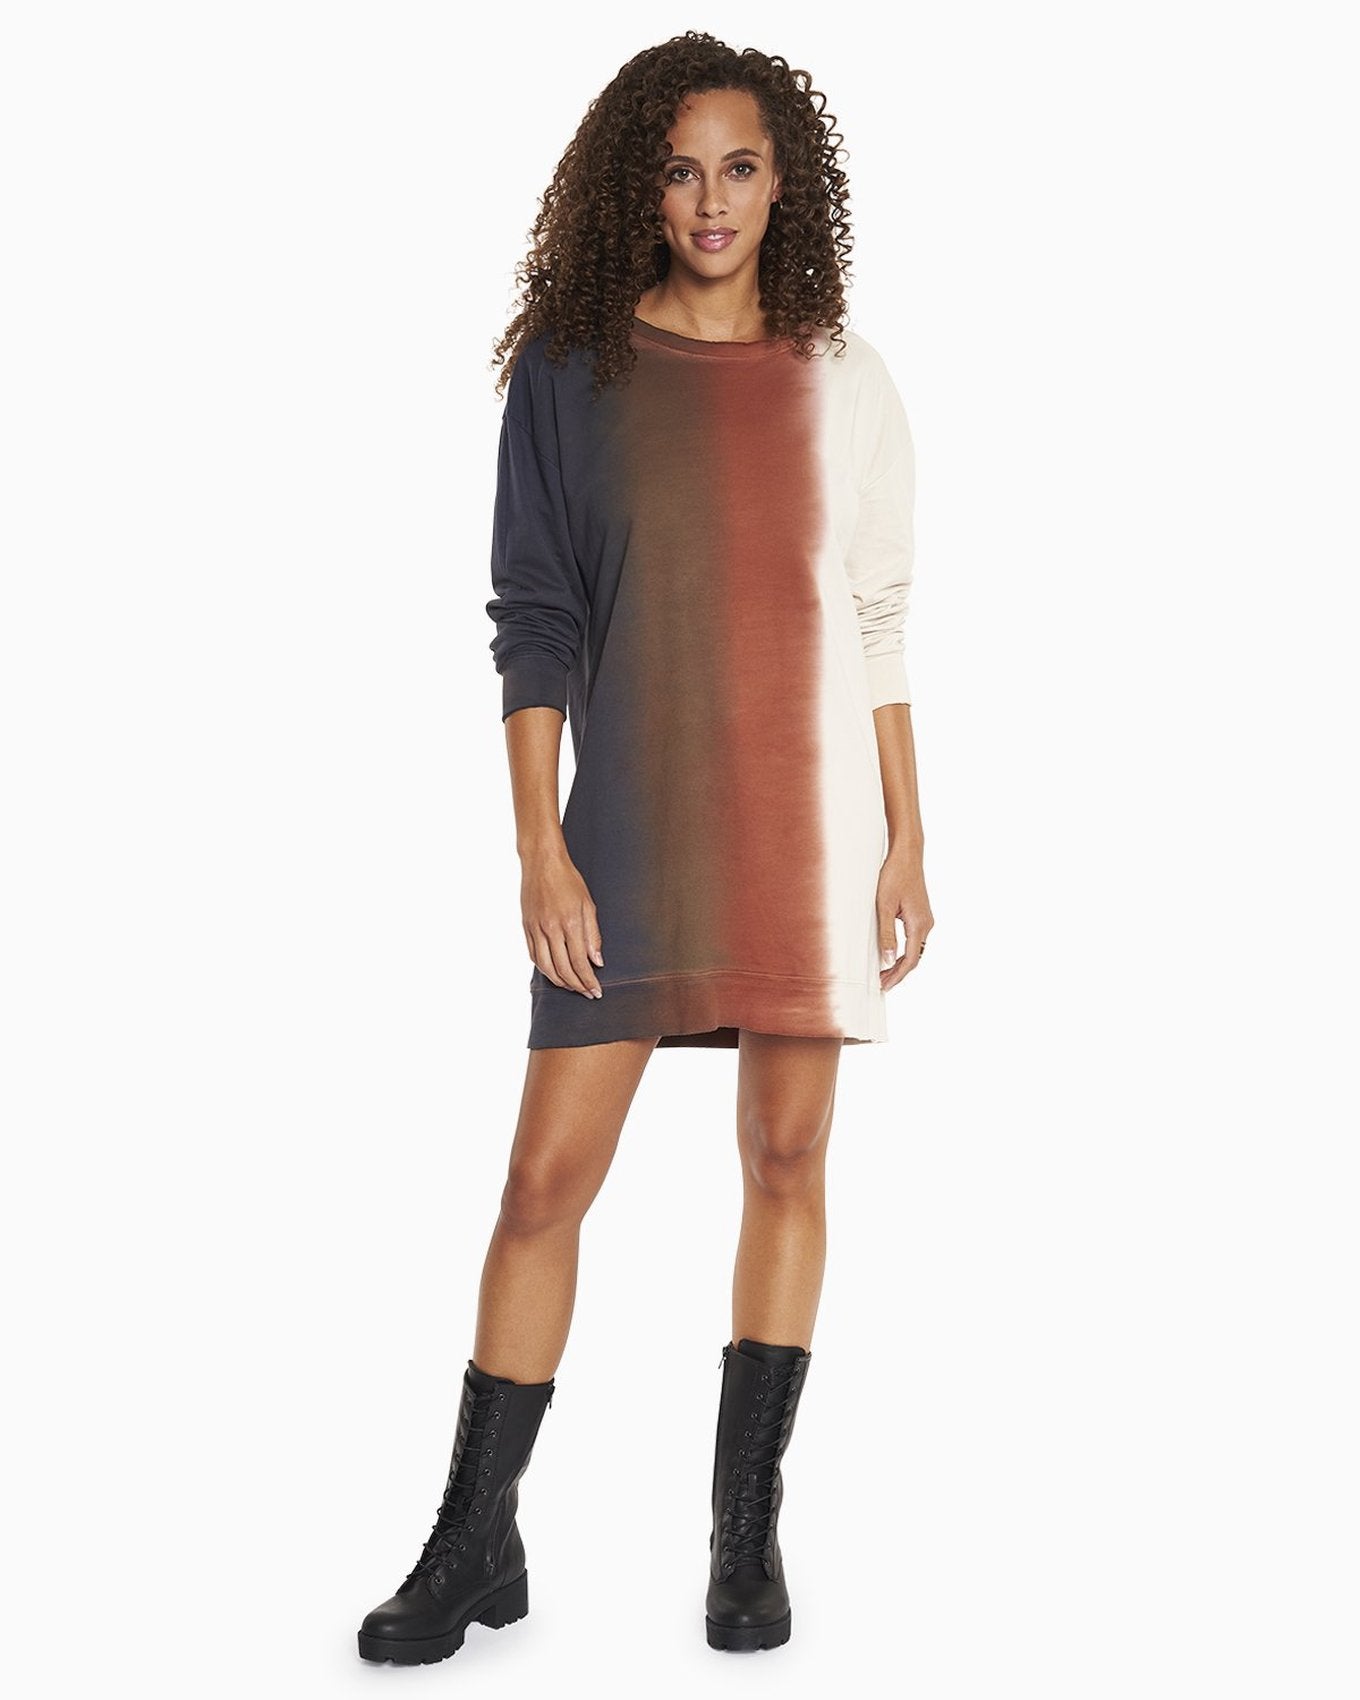 YesAnd Organic Tie Dye Sweatshirt Dress Sweatshirt Dress in color Vertical Tie Dye  and shape sheath